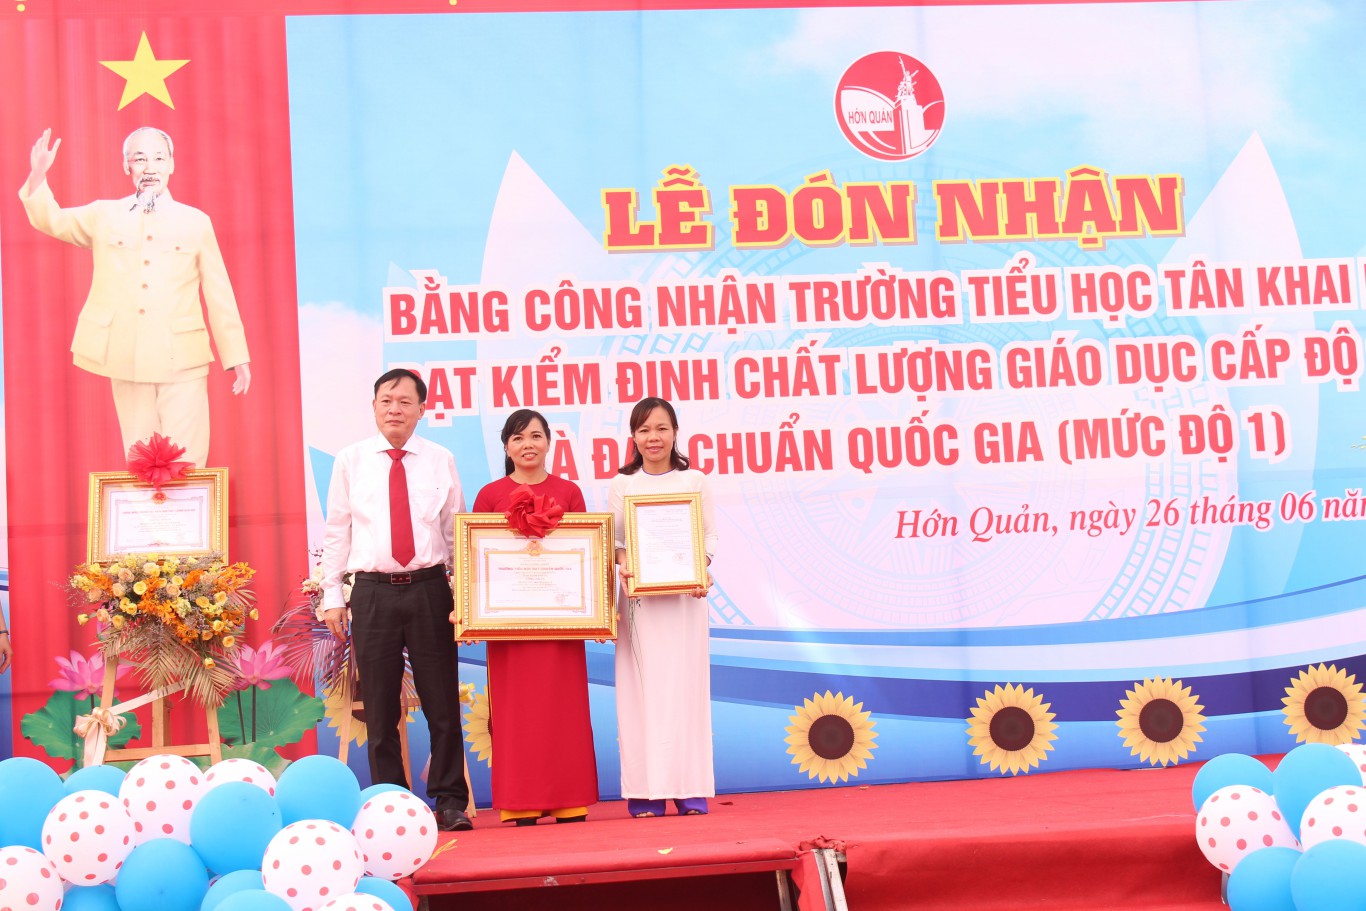 Ông Nguyễn Văn Hạ, Phó CT UBND huyện trao bằng công nhận cho Trường tiểu học Tân Khai B